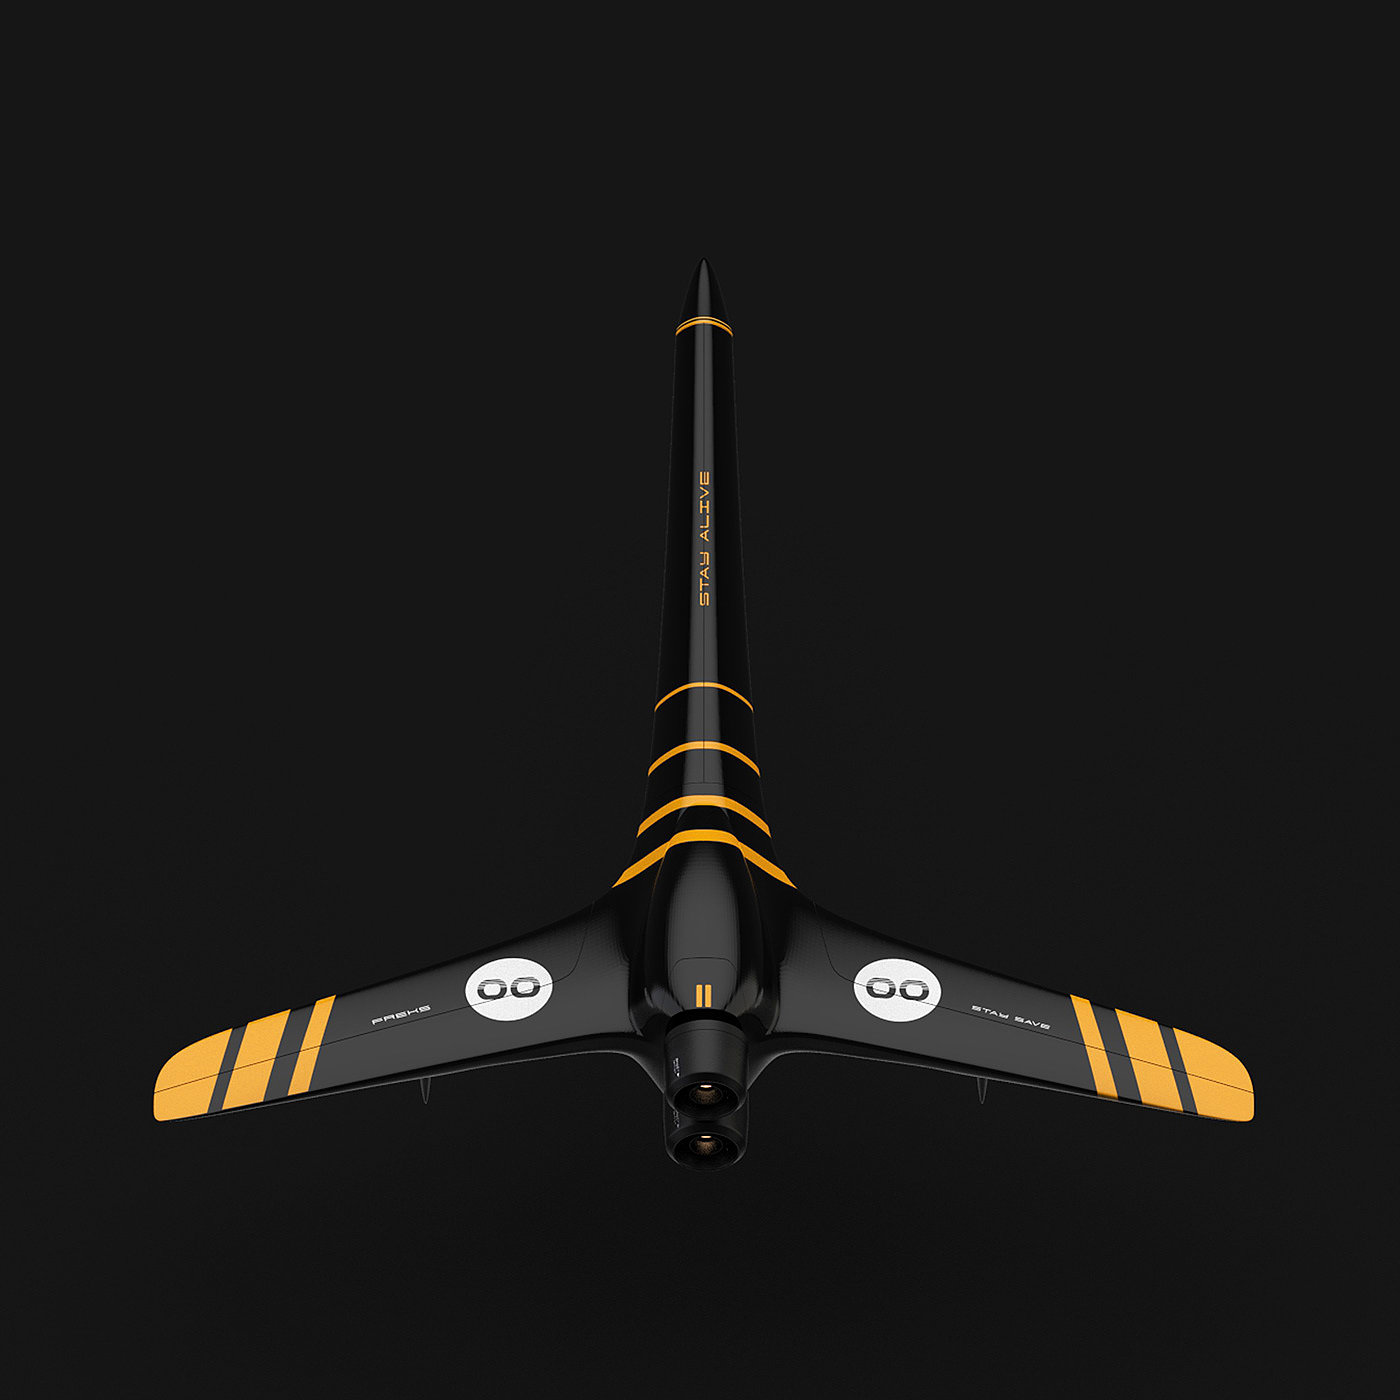 Aero Drone，飞机设计，概念设计，